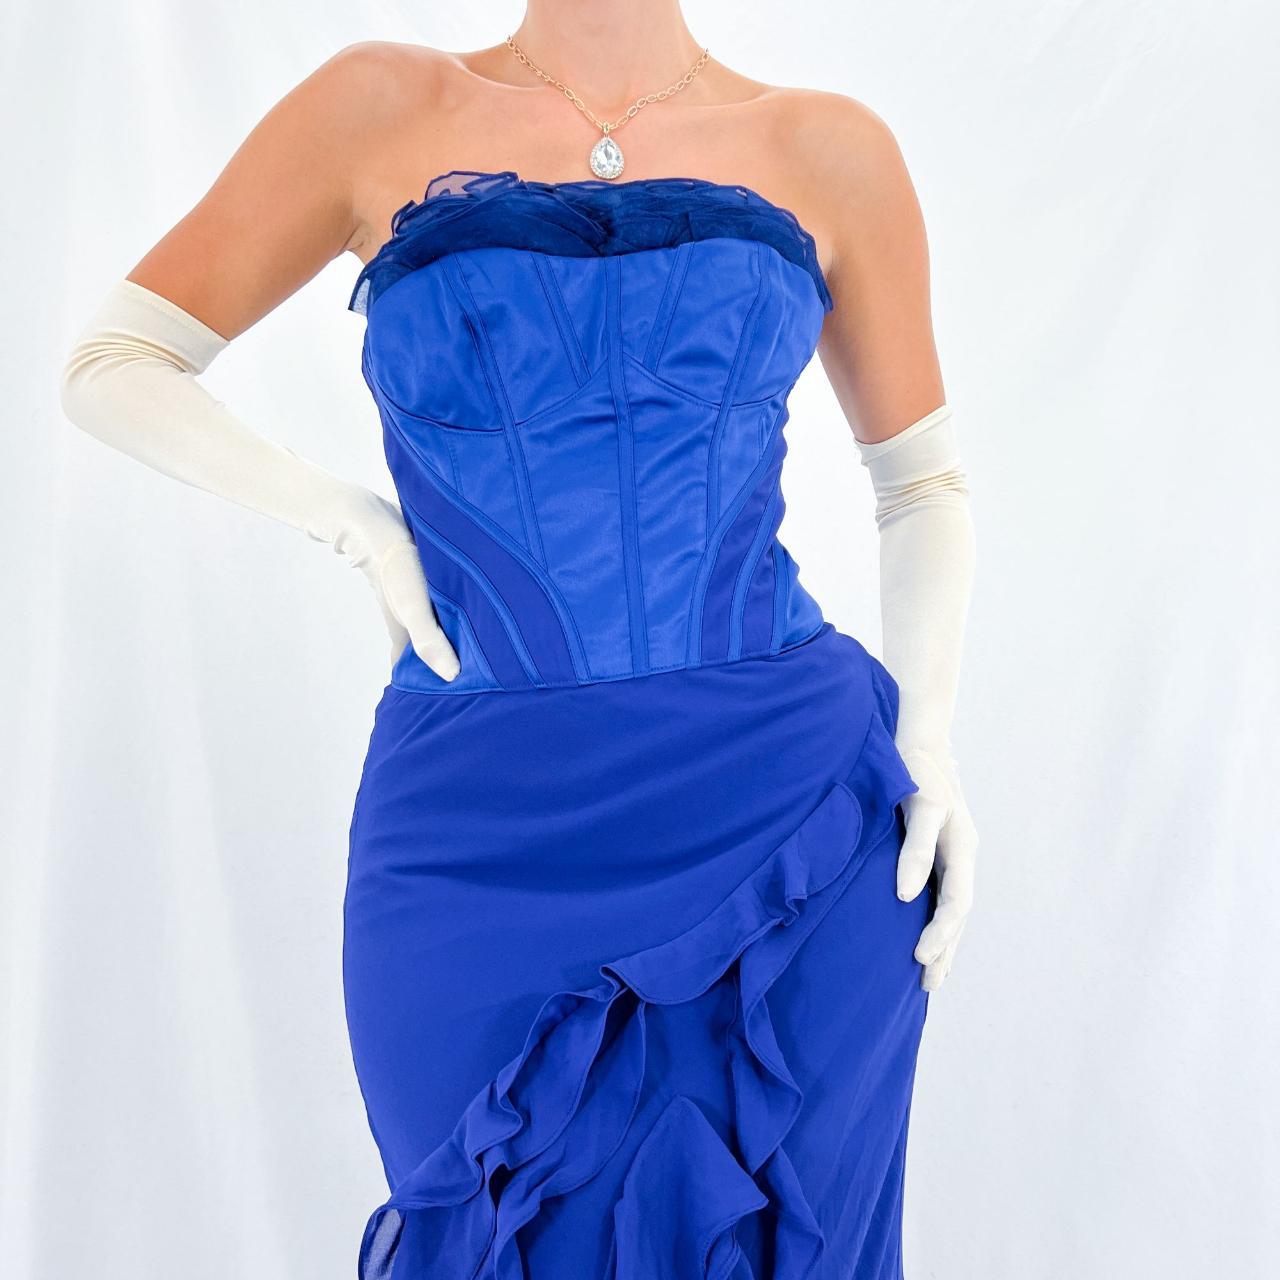 Product Image 3 - [#1660]

Karen Millen Designer Royal Blue